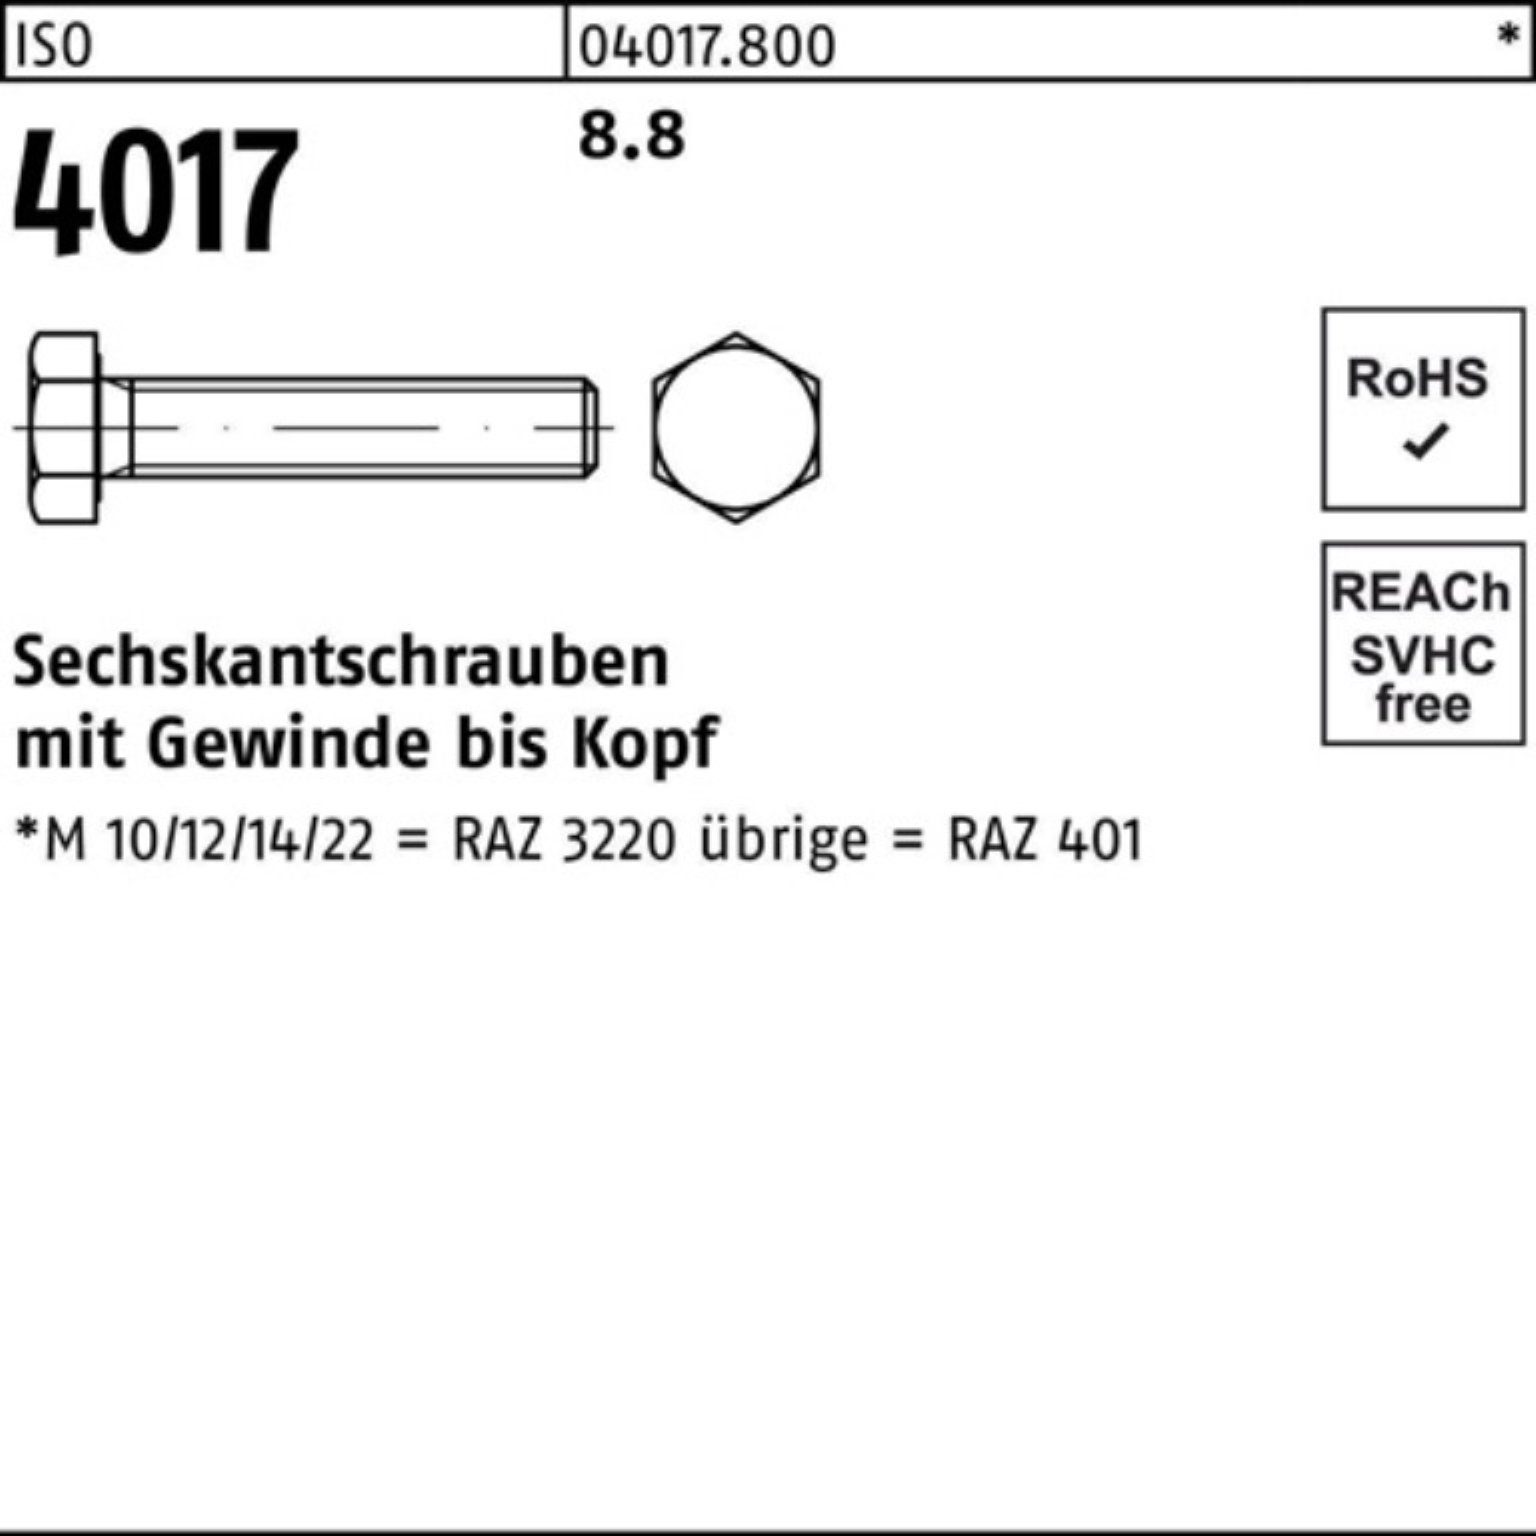 10 Sechskantschraube M27x Stück Pack ISO 100er 401 Sechskantschraube Bufab VG 4017 ISO 8.8 85